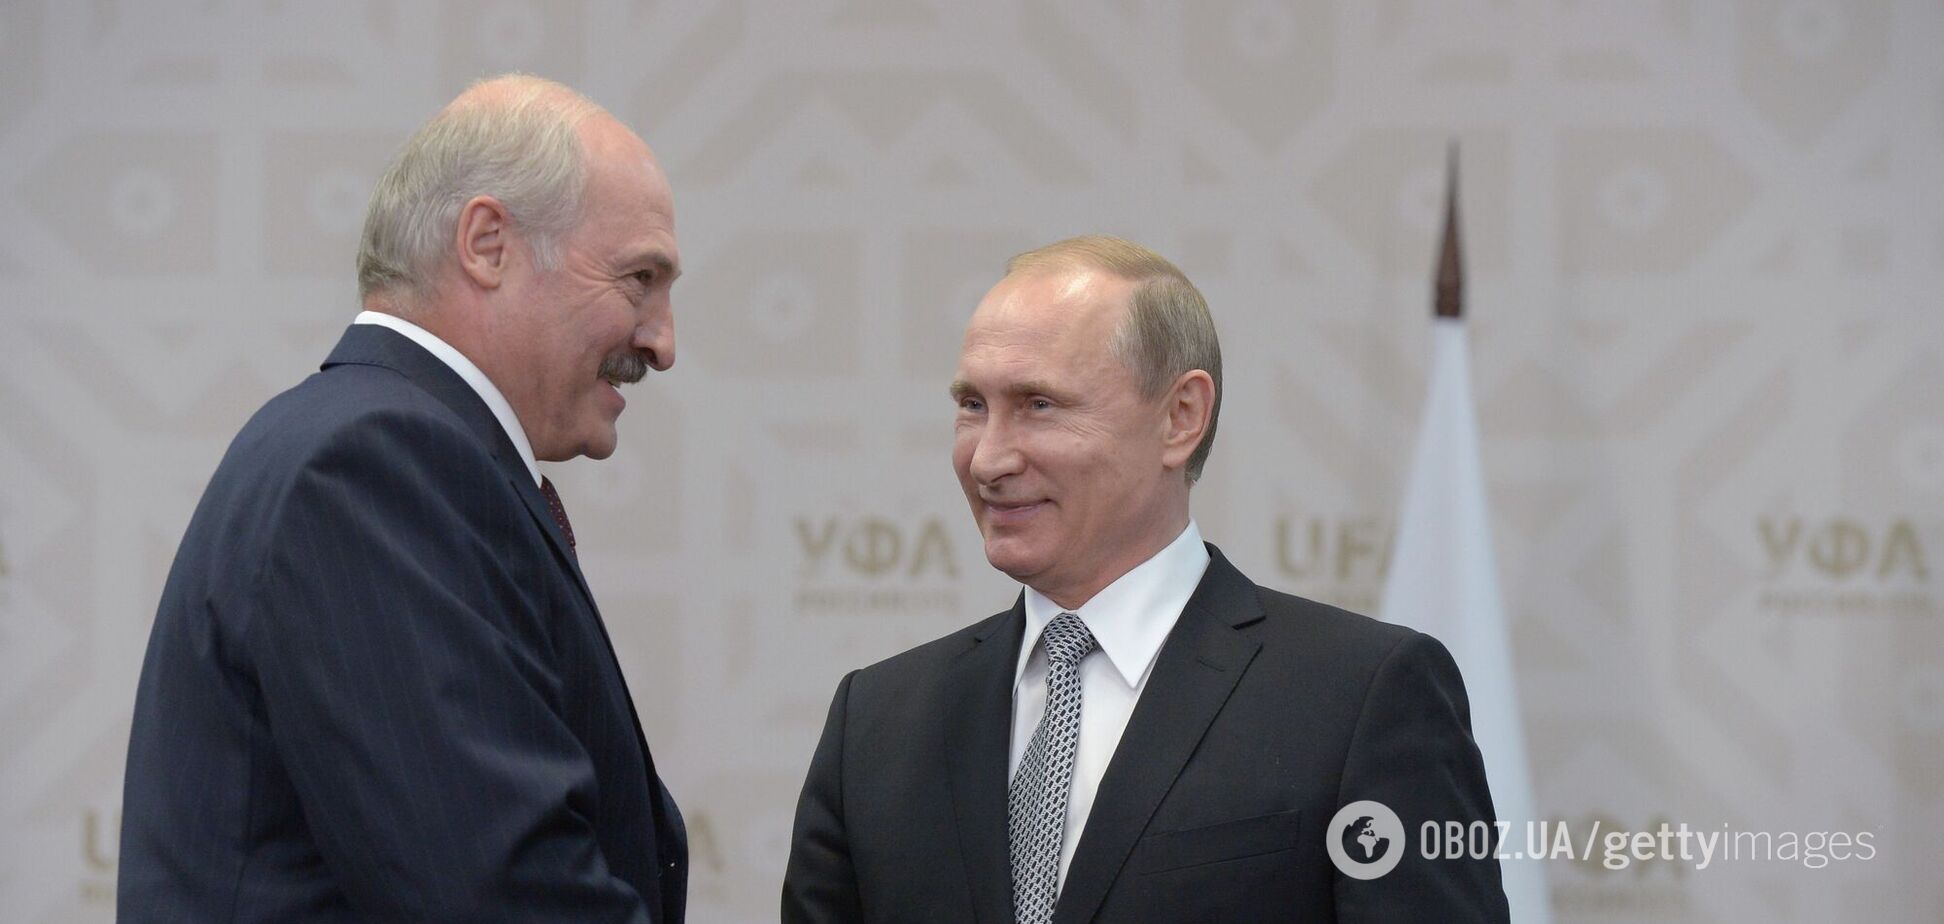 Звернення Лукашенка до Путіна розцінили як загрозу нацбезпеці